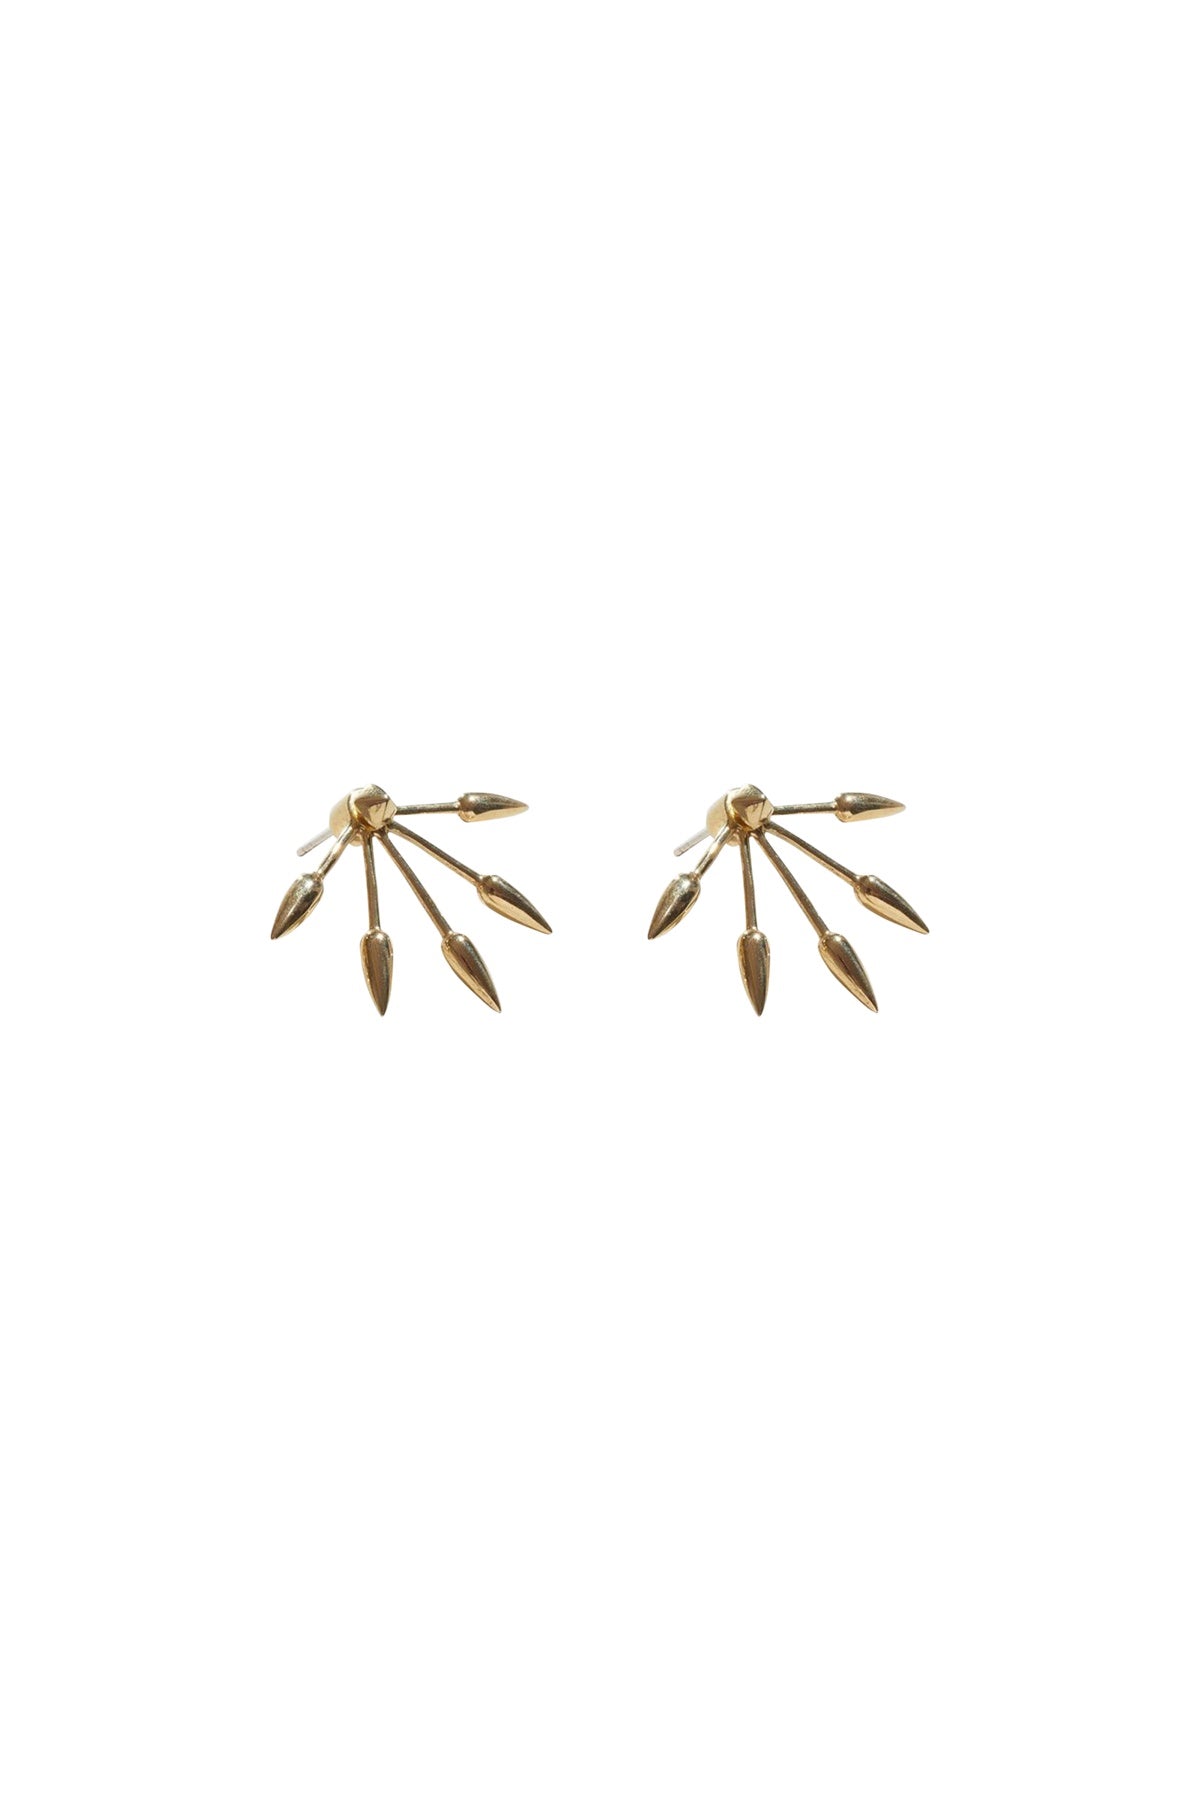 Five Spike Earrings - Gold